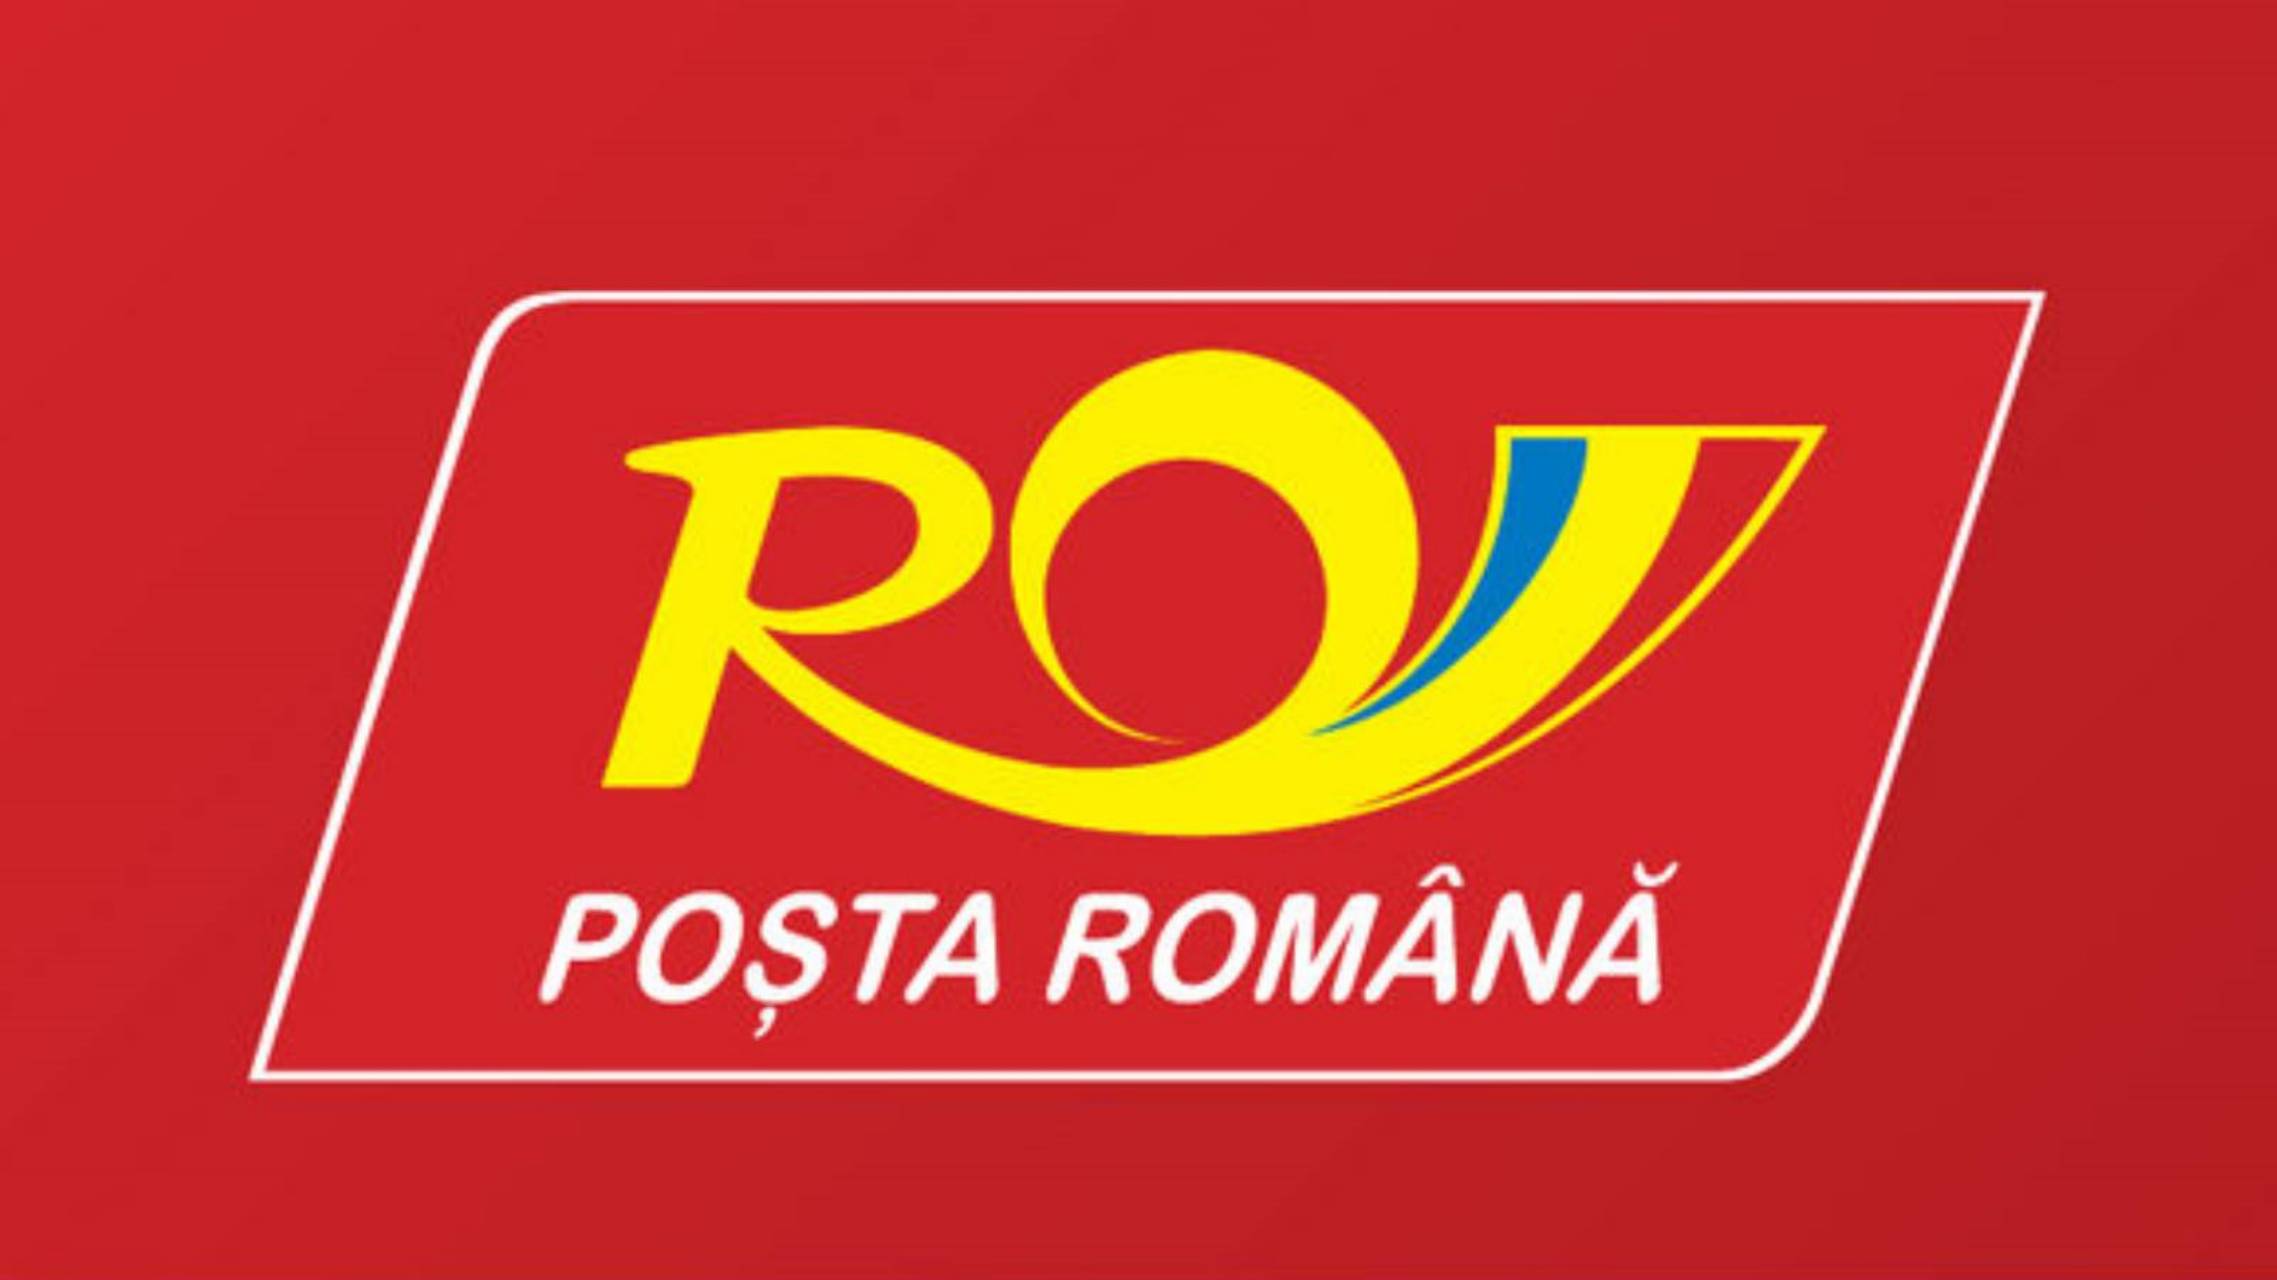 Livraisons à domicile par la poste roumaine